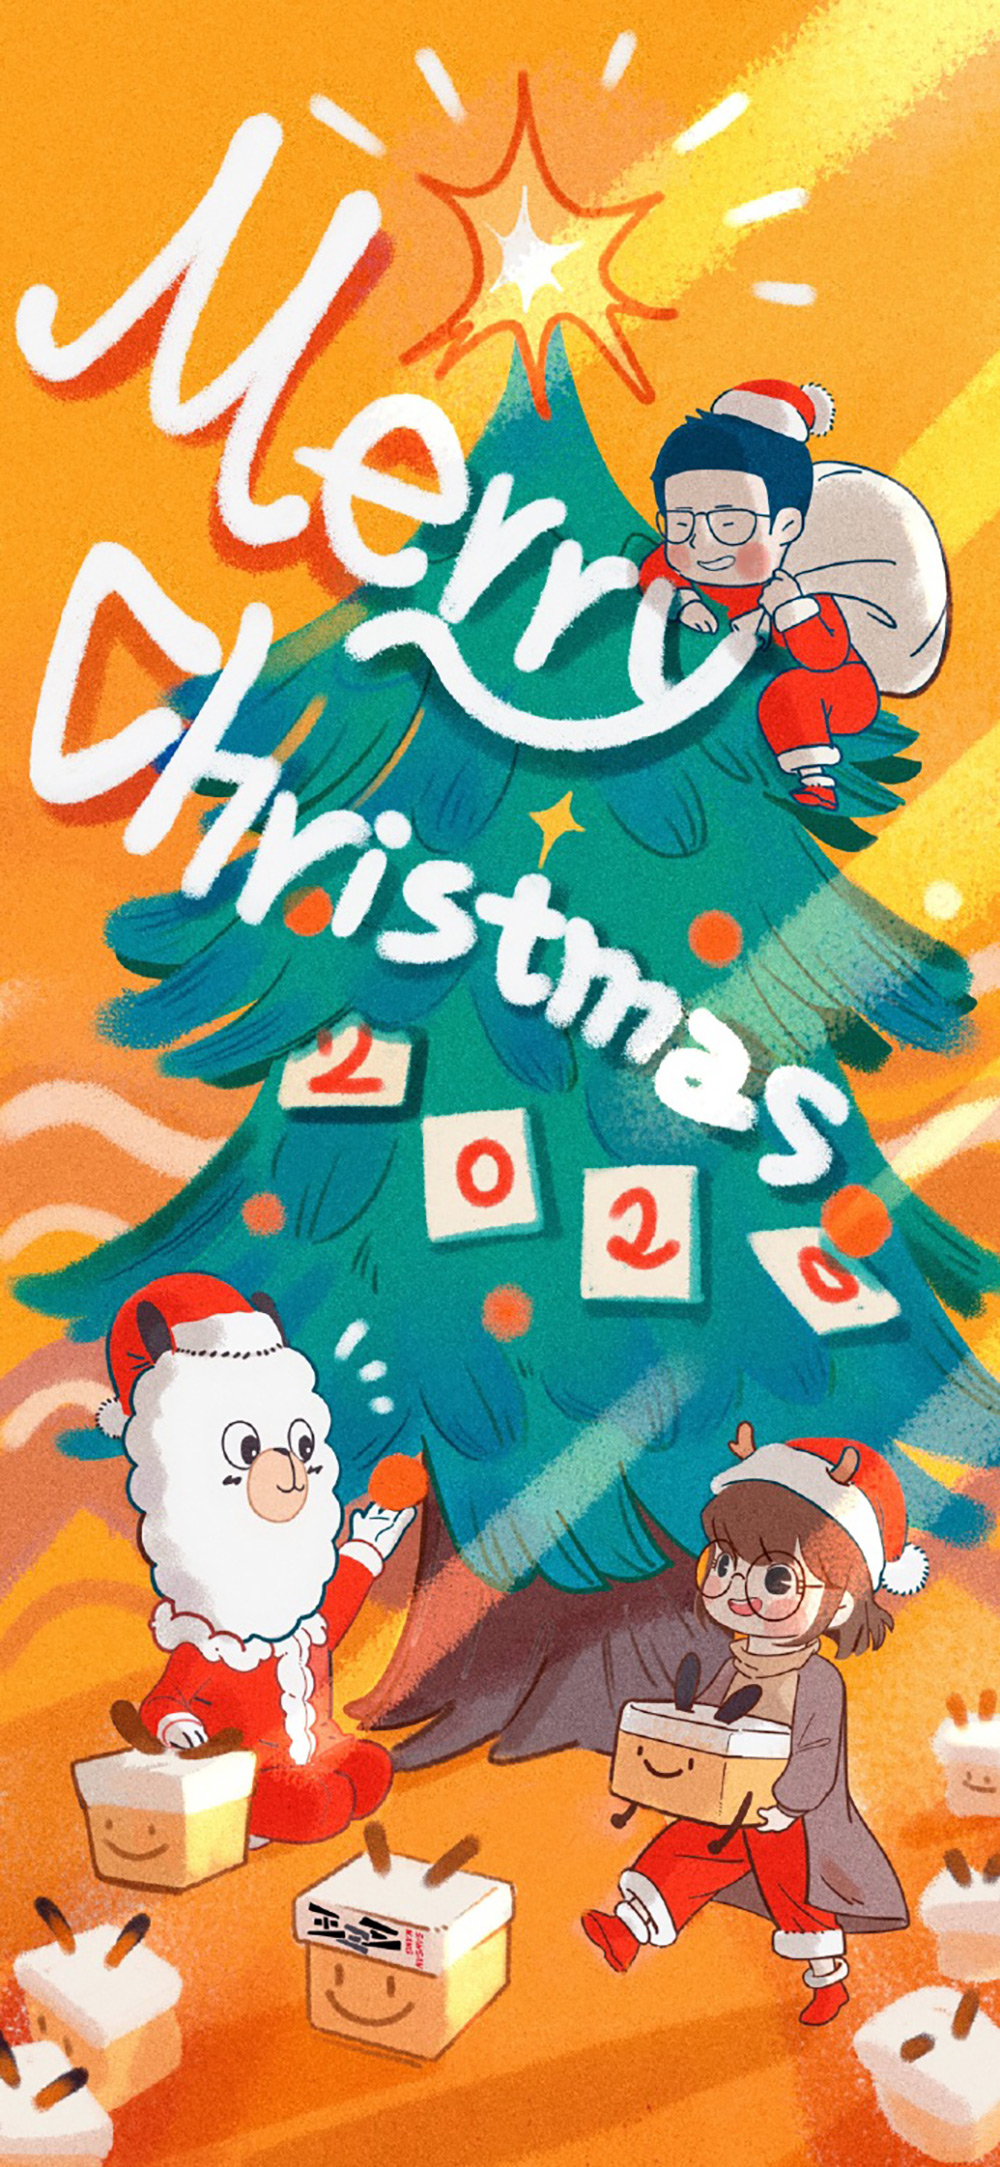 温暖可爱！12张圣诞节趣味插画营销海报